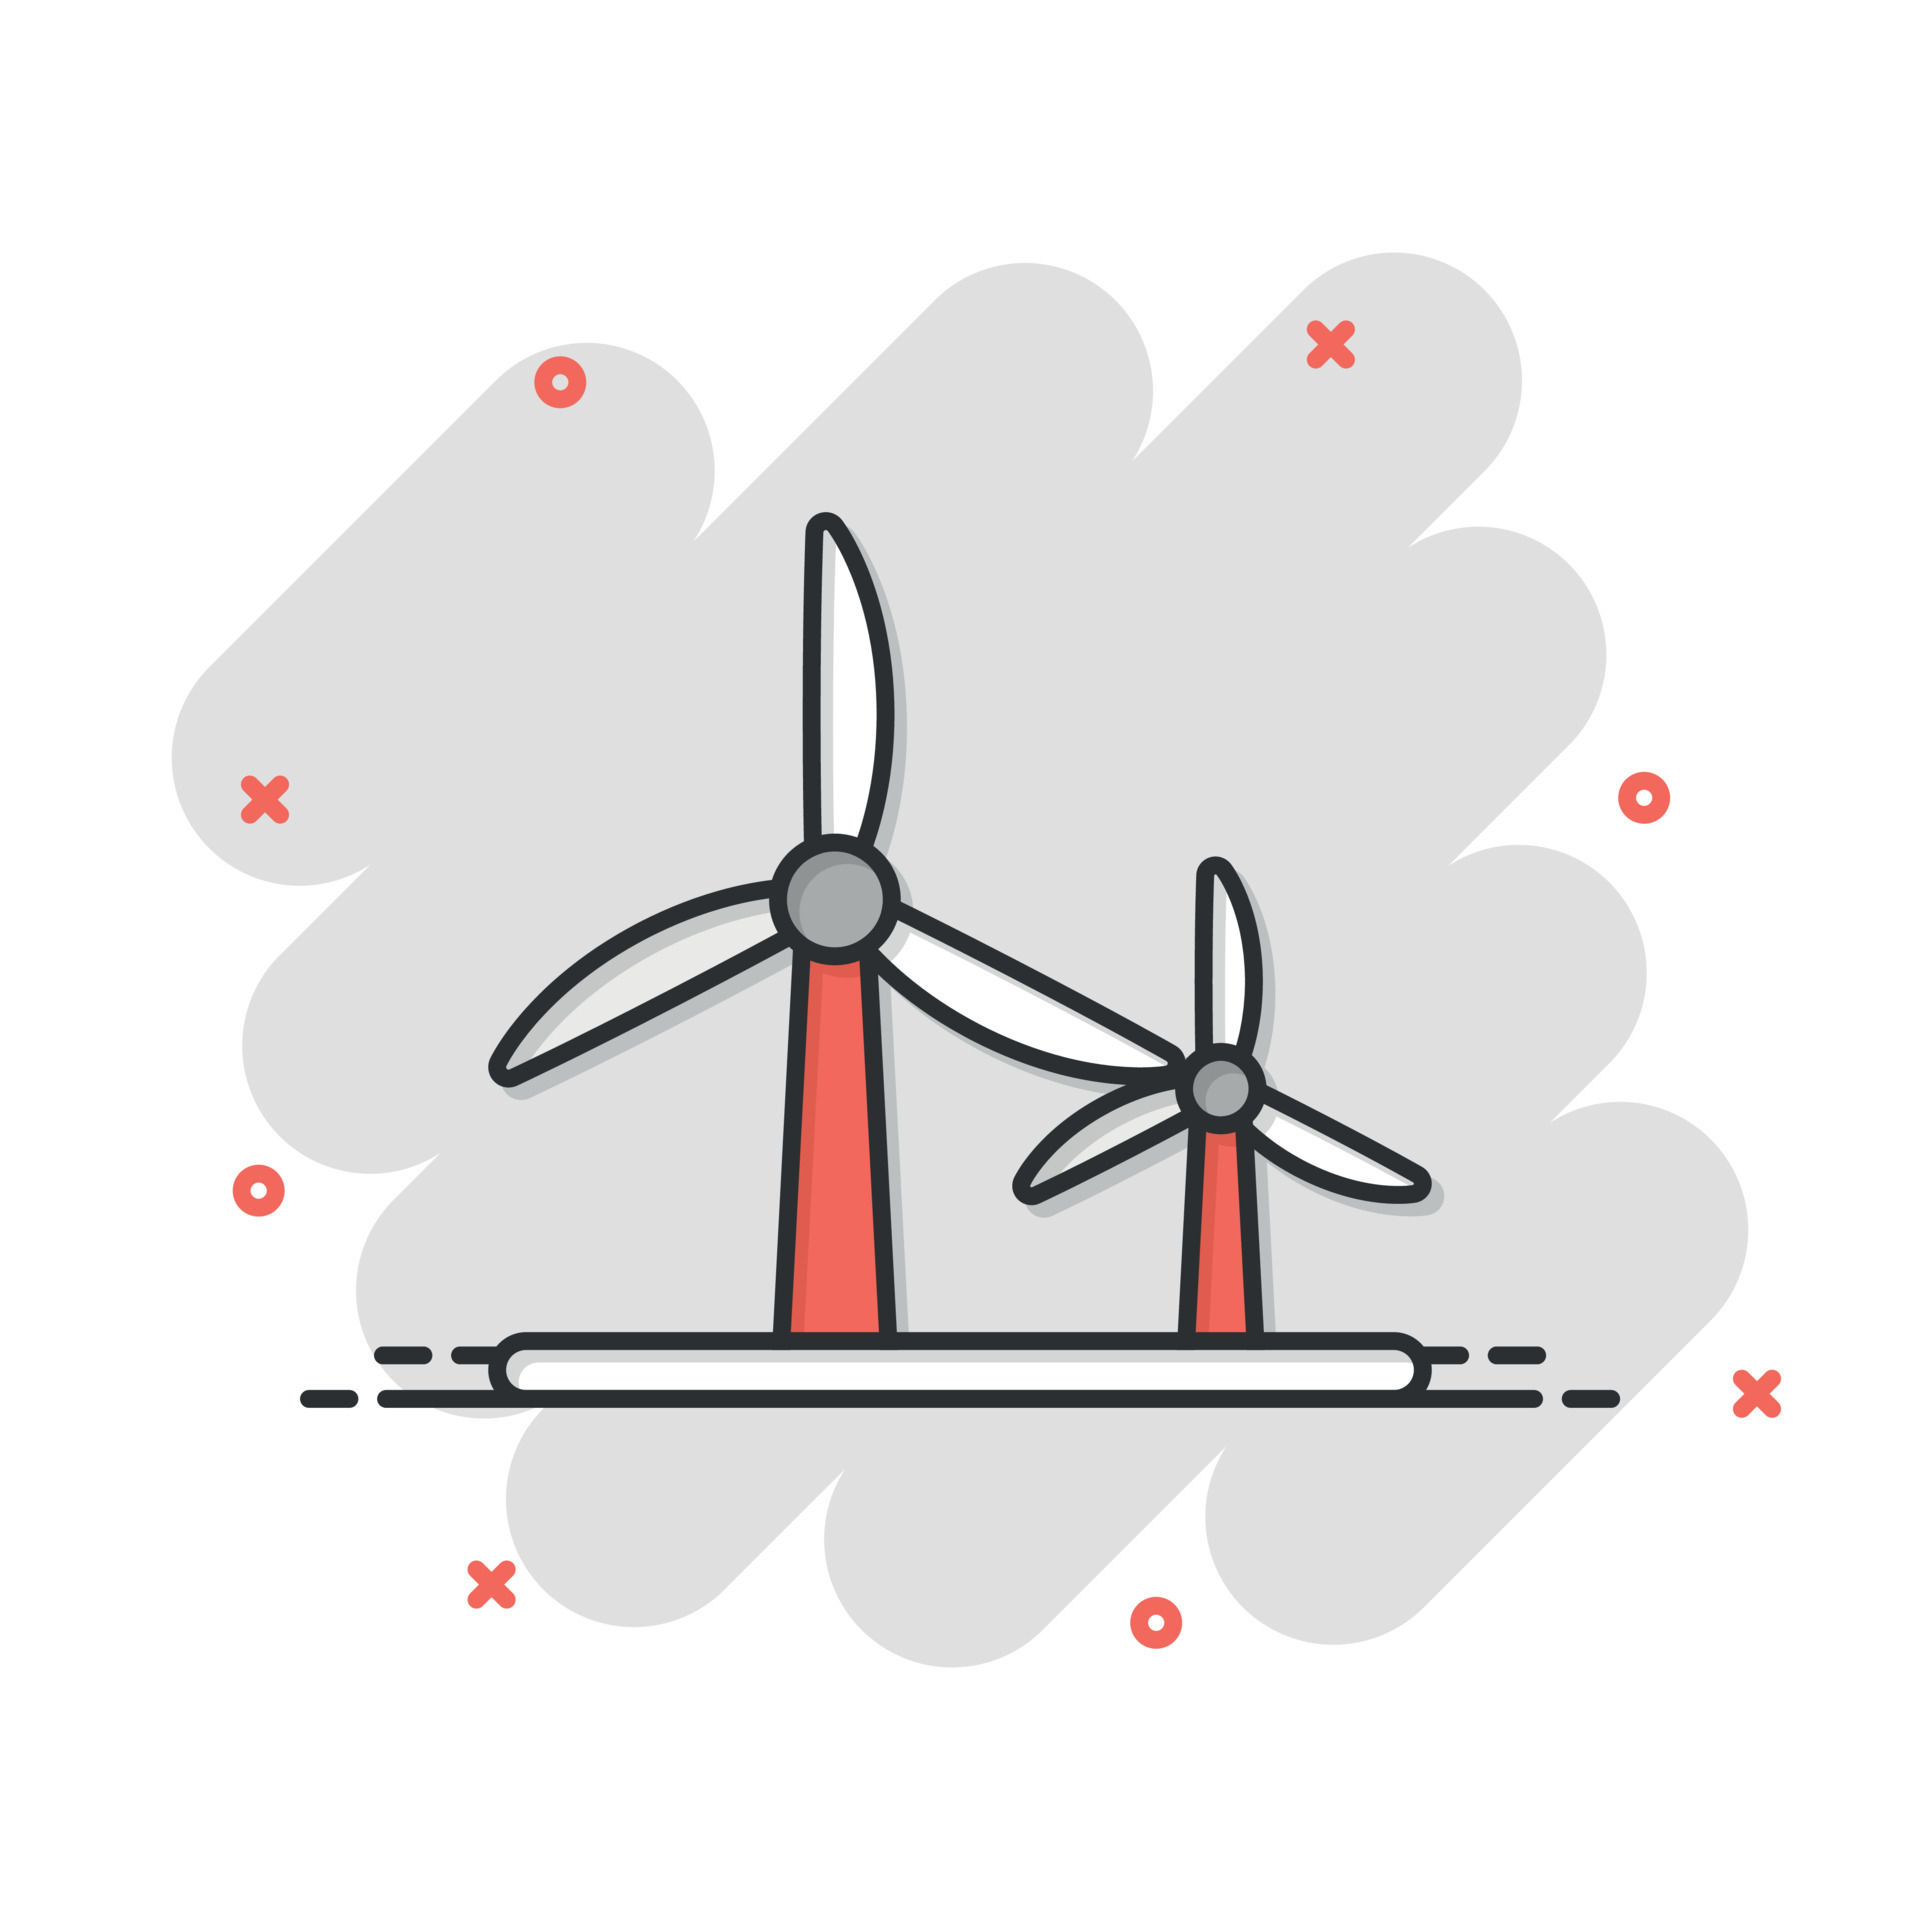 Turbina Eólica En Icono De Dibujos Animados Ilustración del Vector